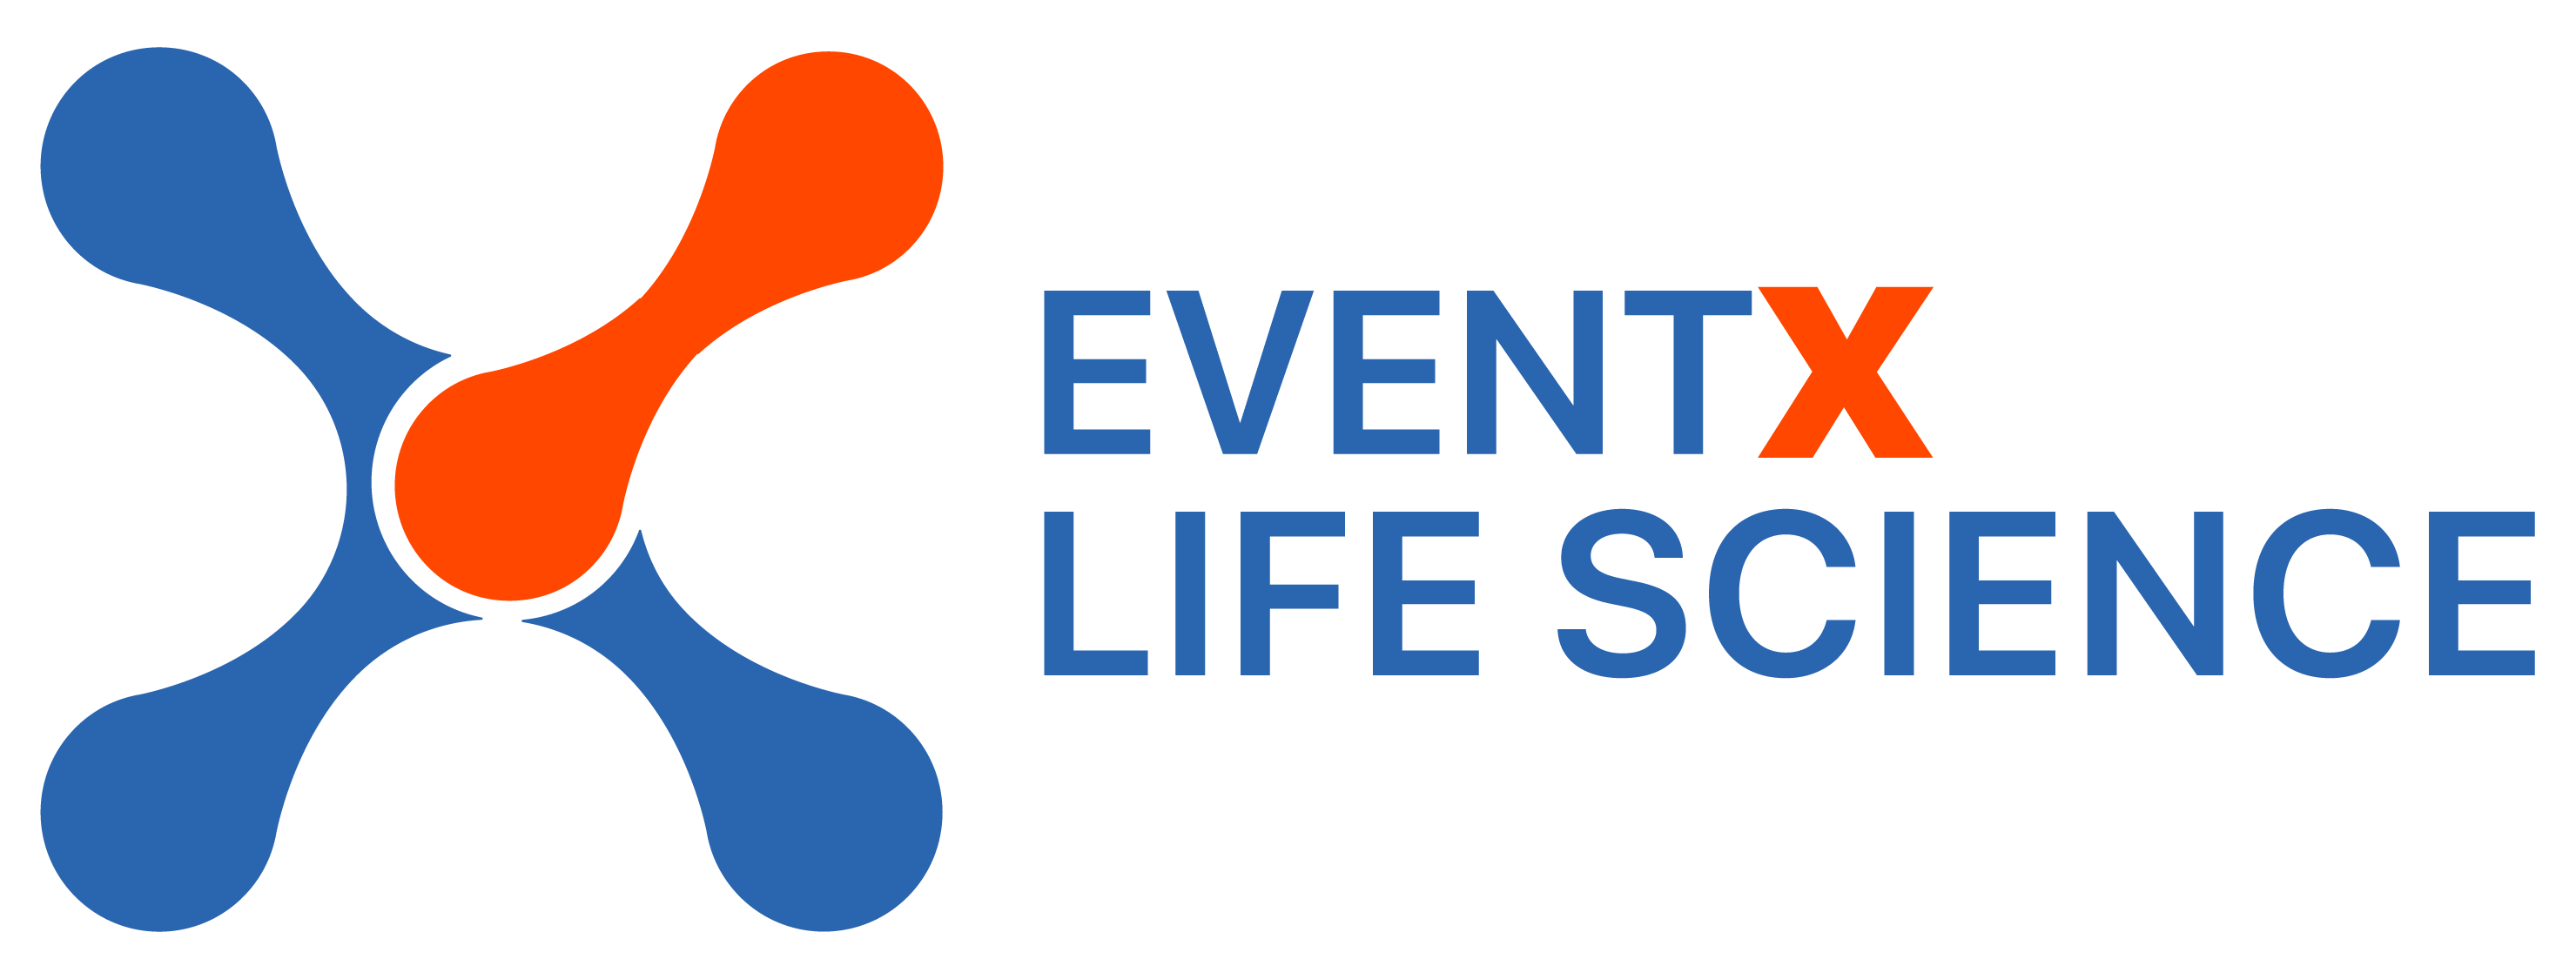 EventX Life Sciences - Nemzetközi konferencia és üzletember-találkozó